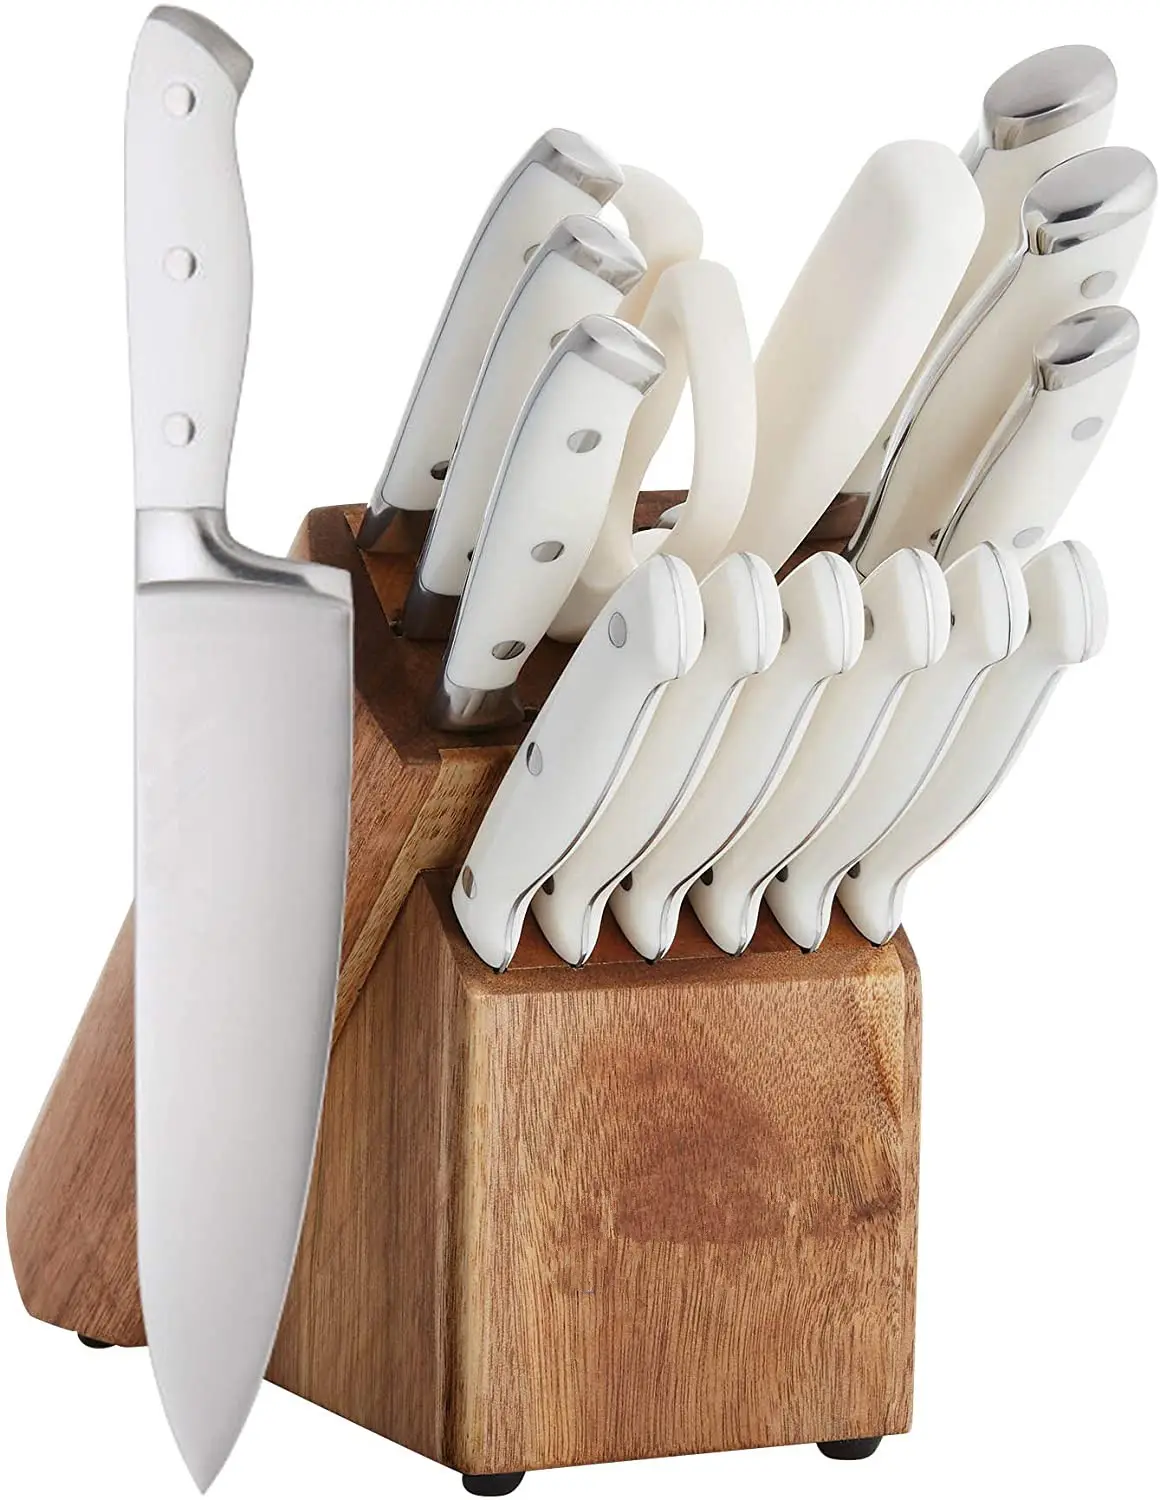 15 pcs produttori set di forbici per coltelli unici professionali con blocco di supporto in legno e acciaio per affilare